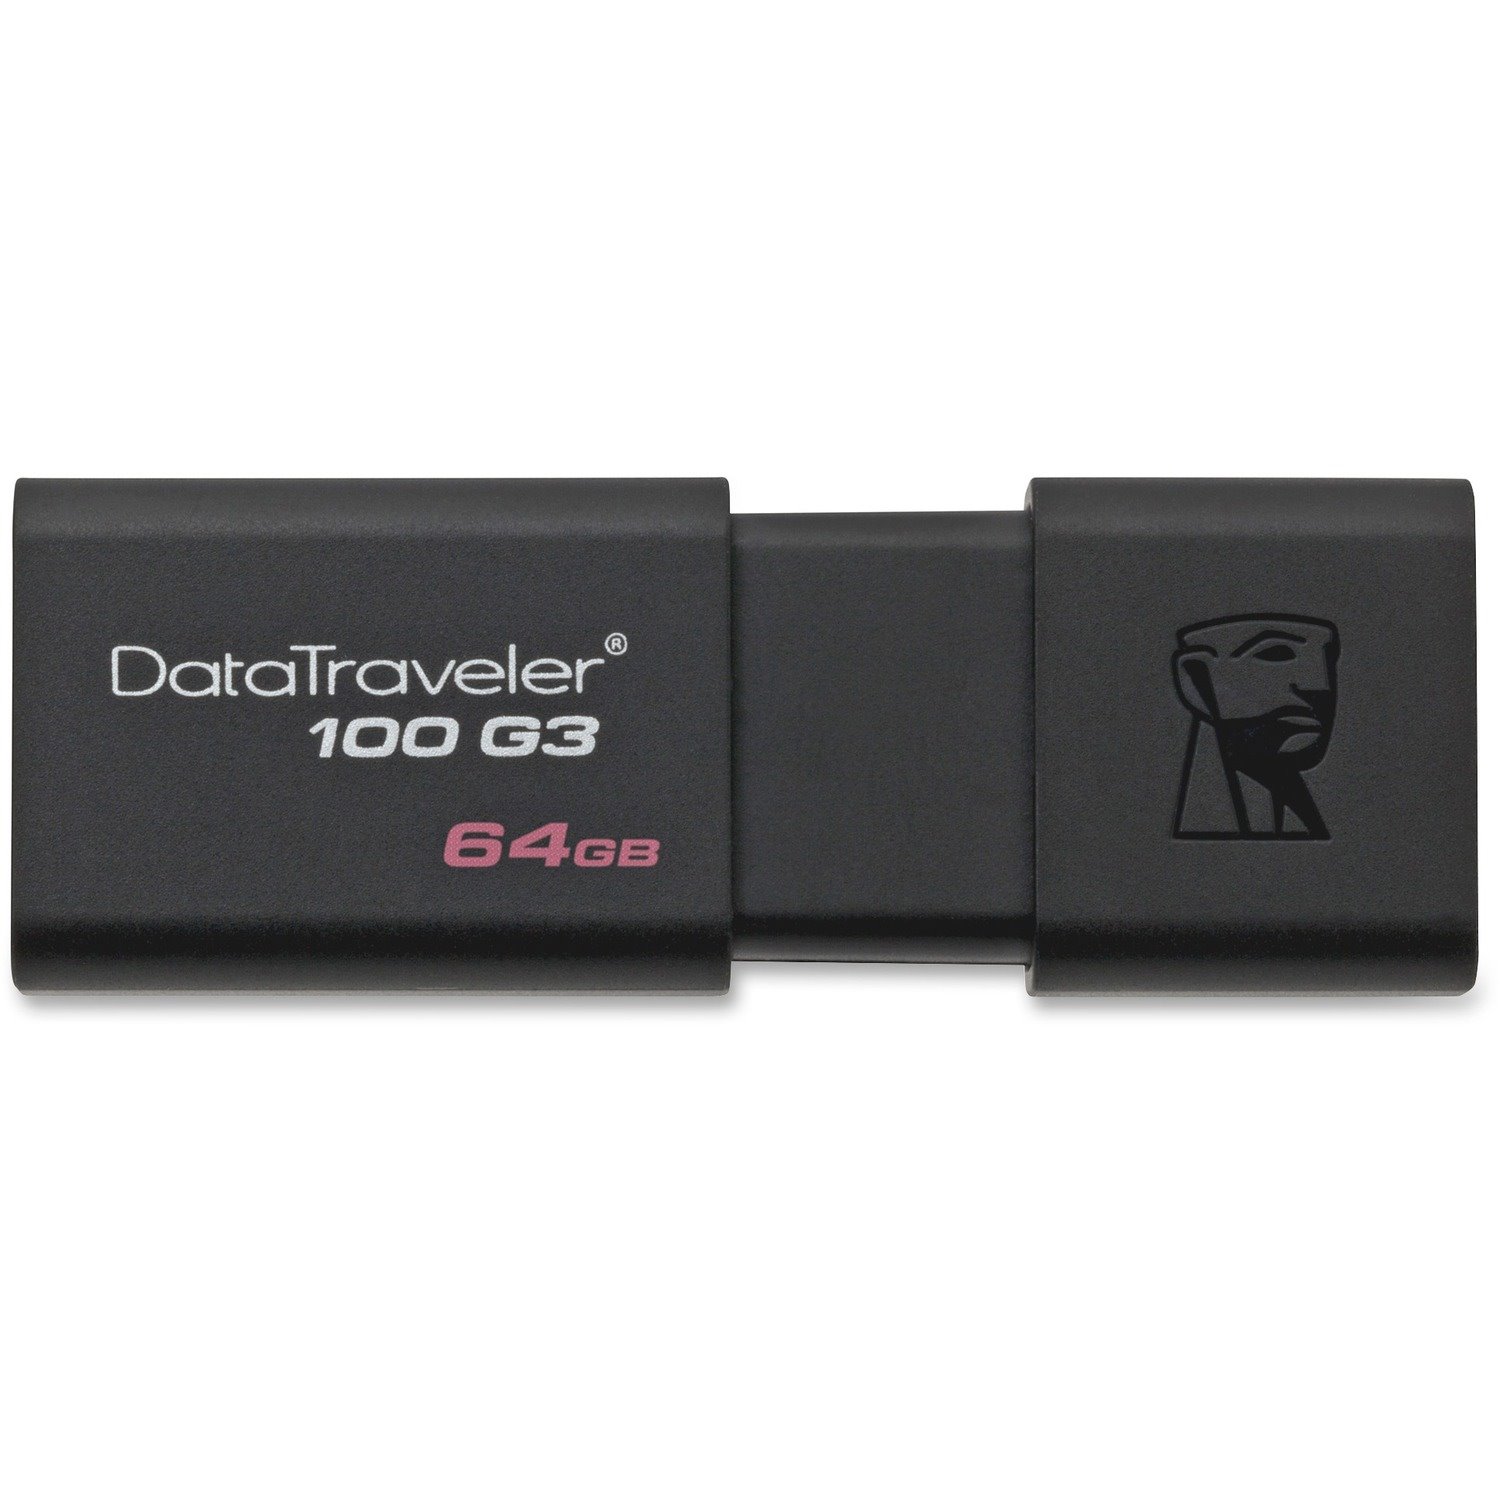 Kingston DataTraveler 64GB 100G3 USB 3.0 Flash Drive